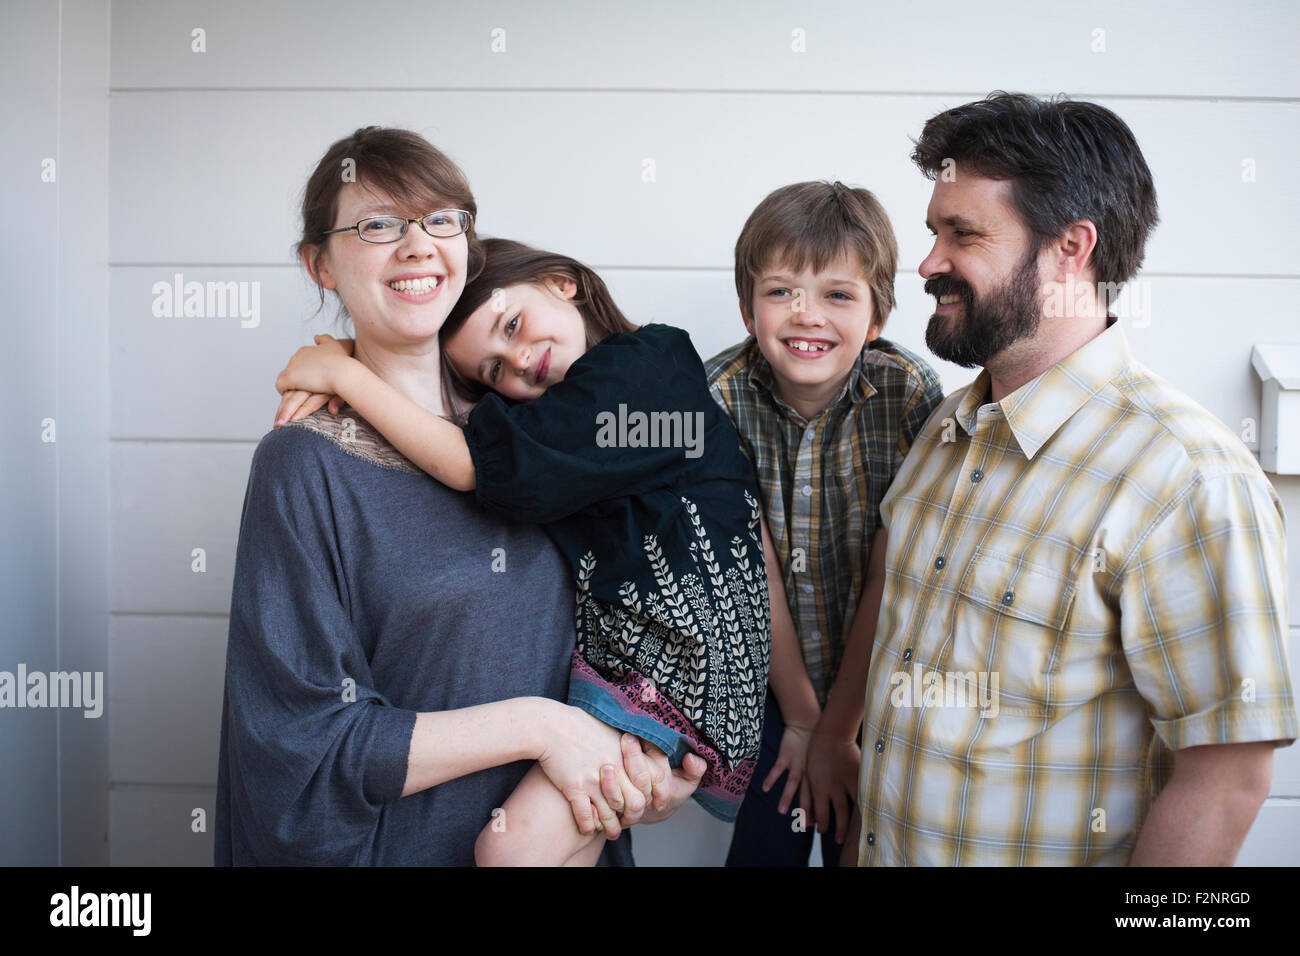 Les parents et les enfants de race blanche smiling outdoors Banque D'Images